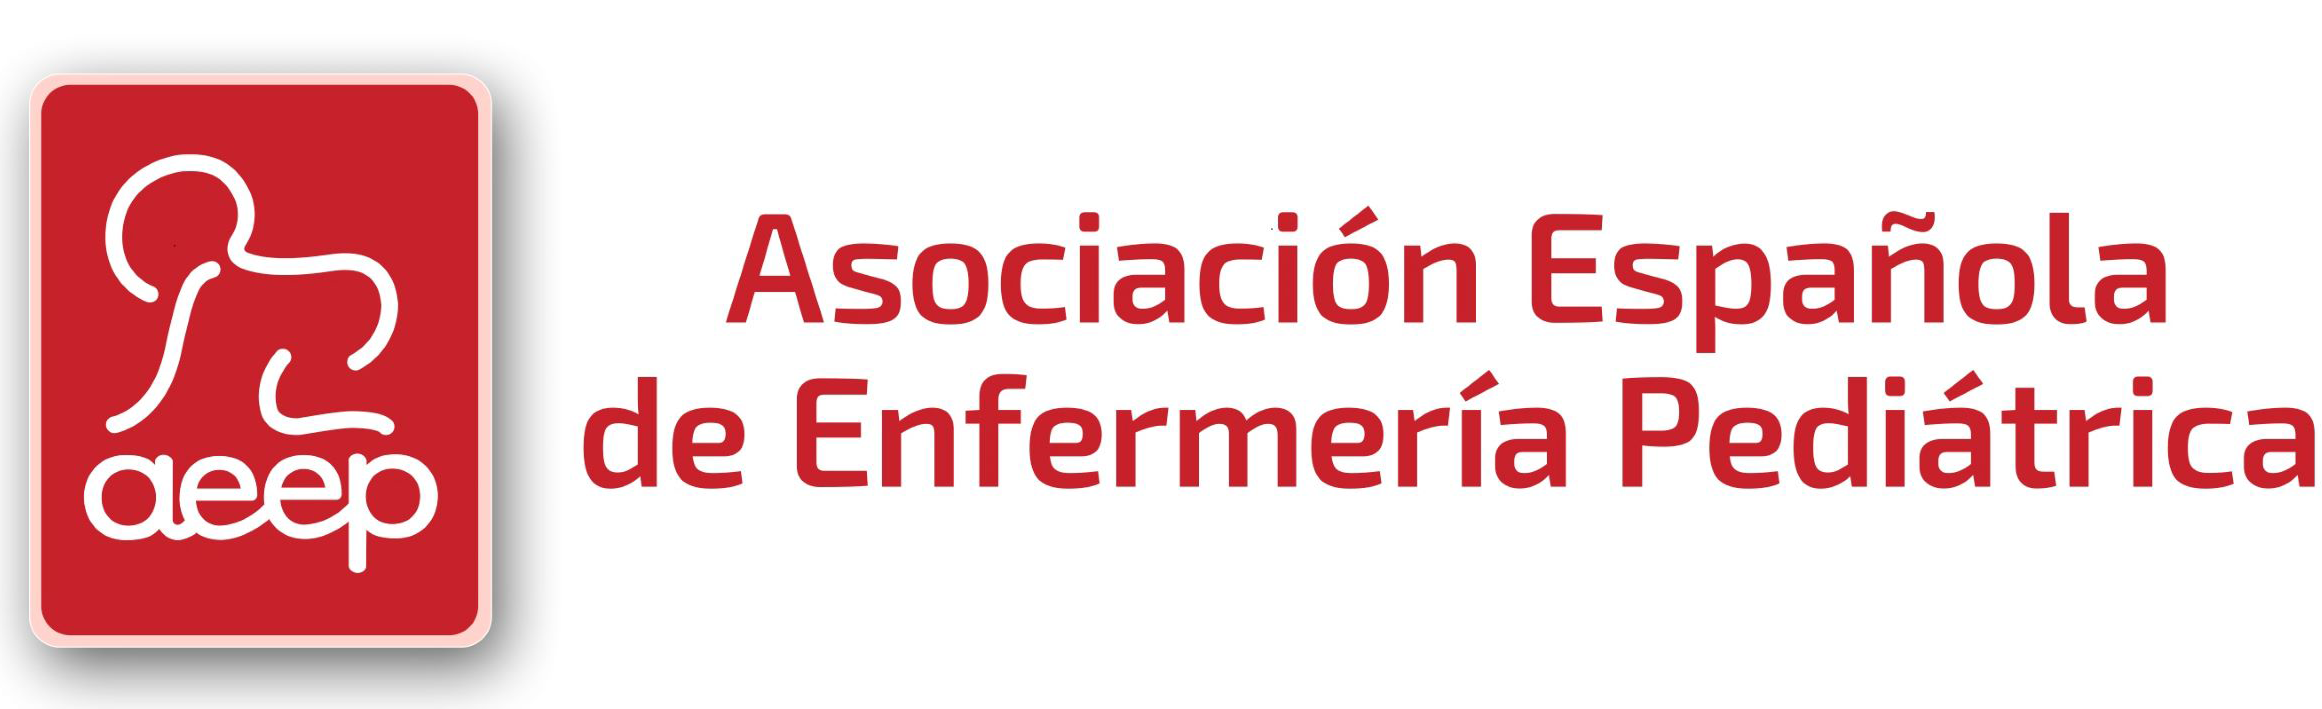 Asociación Española de Enfermería Pediátrica